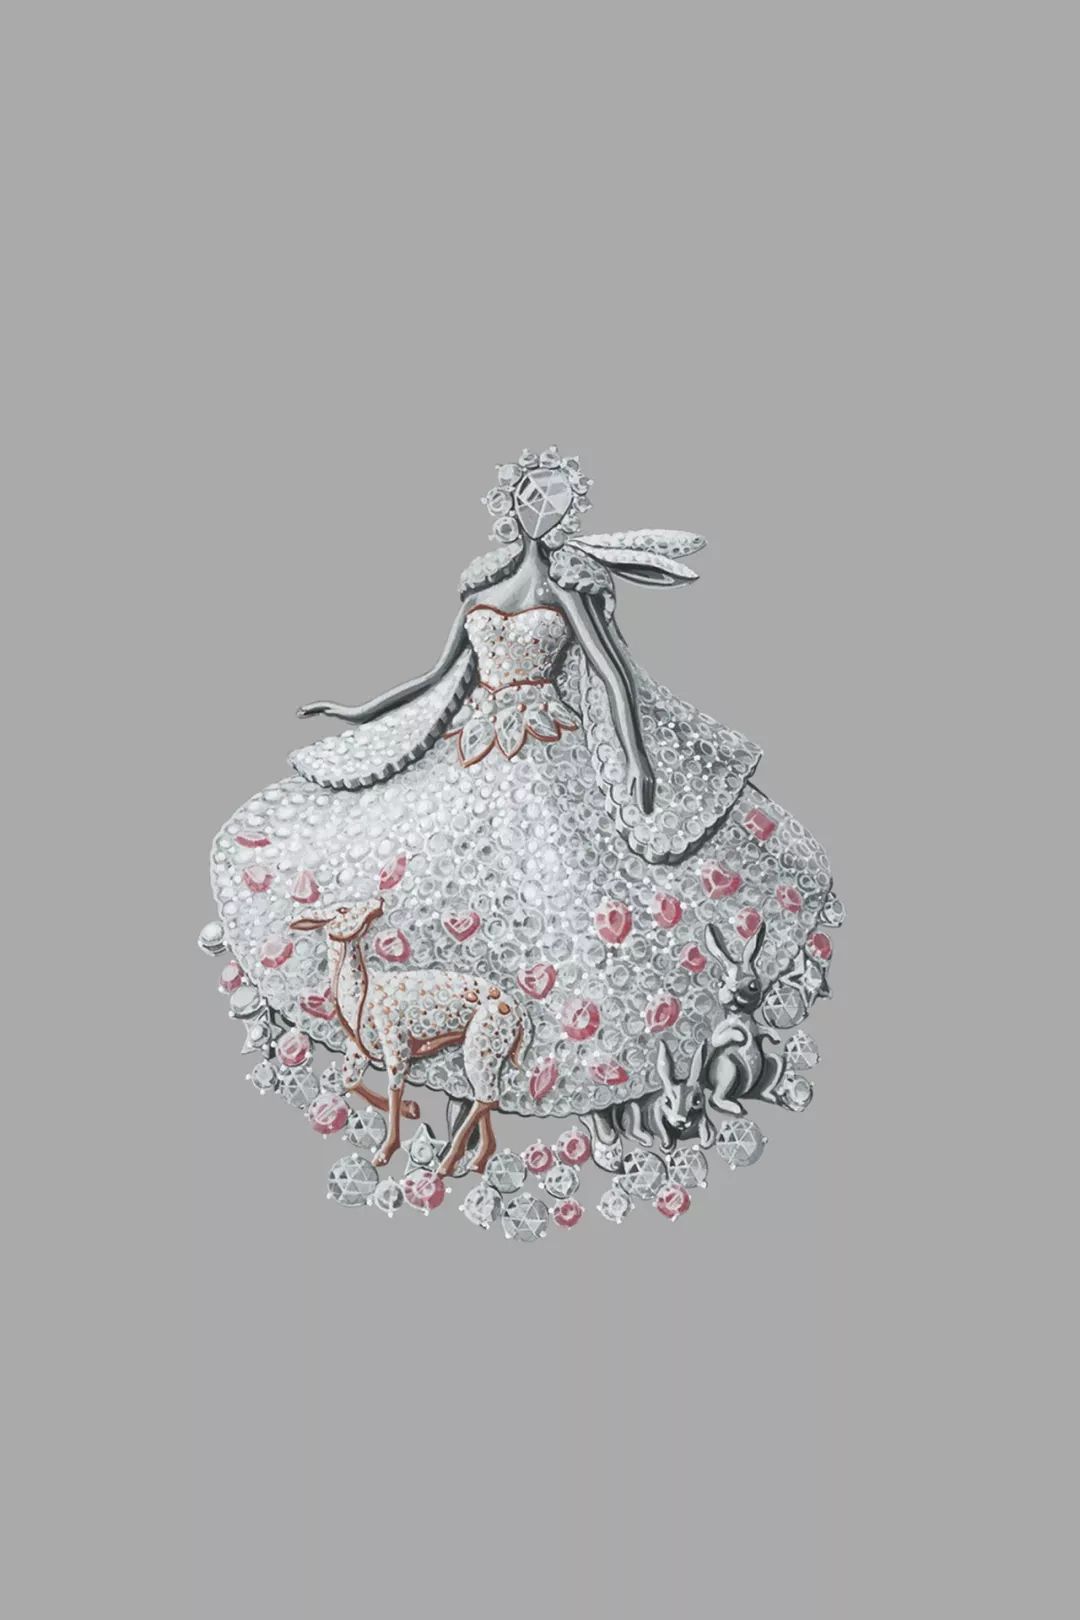 绝美的手绘梵克雅宝版驴皮公主的故事